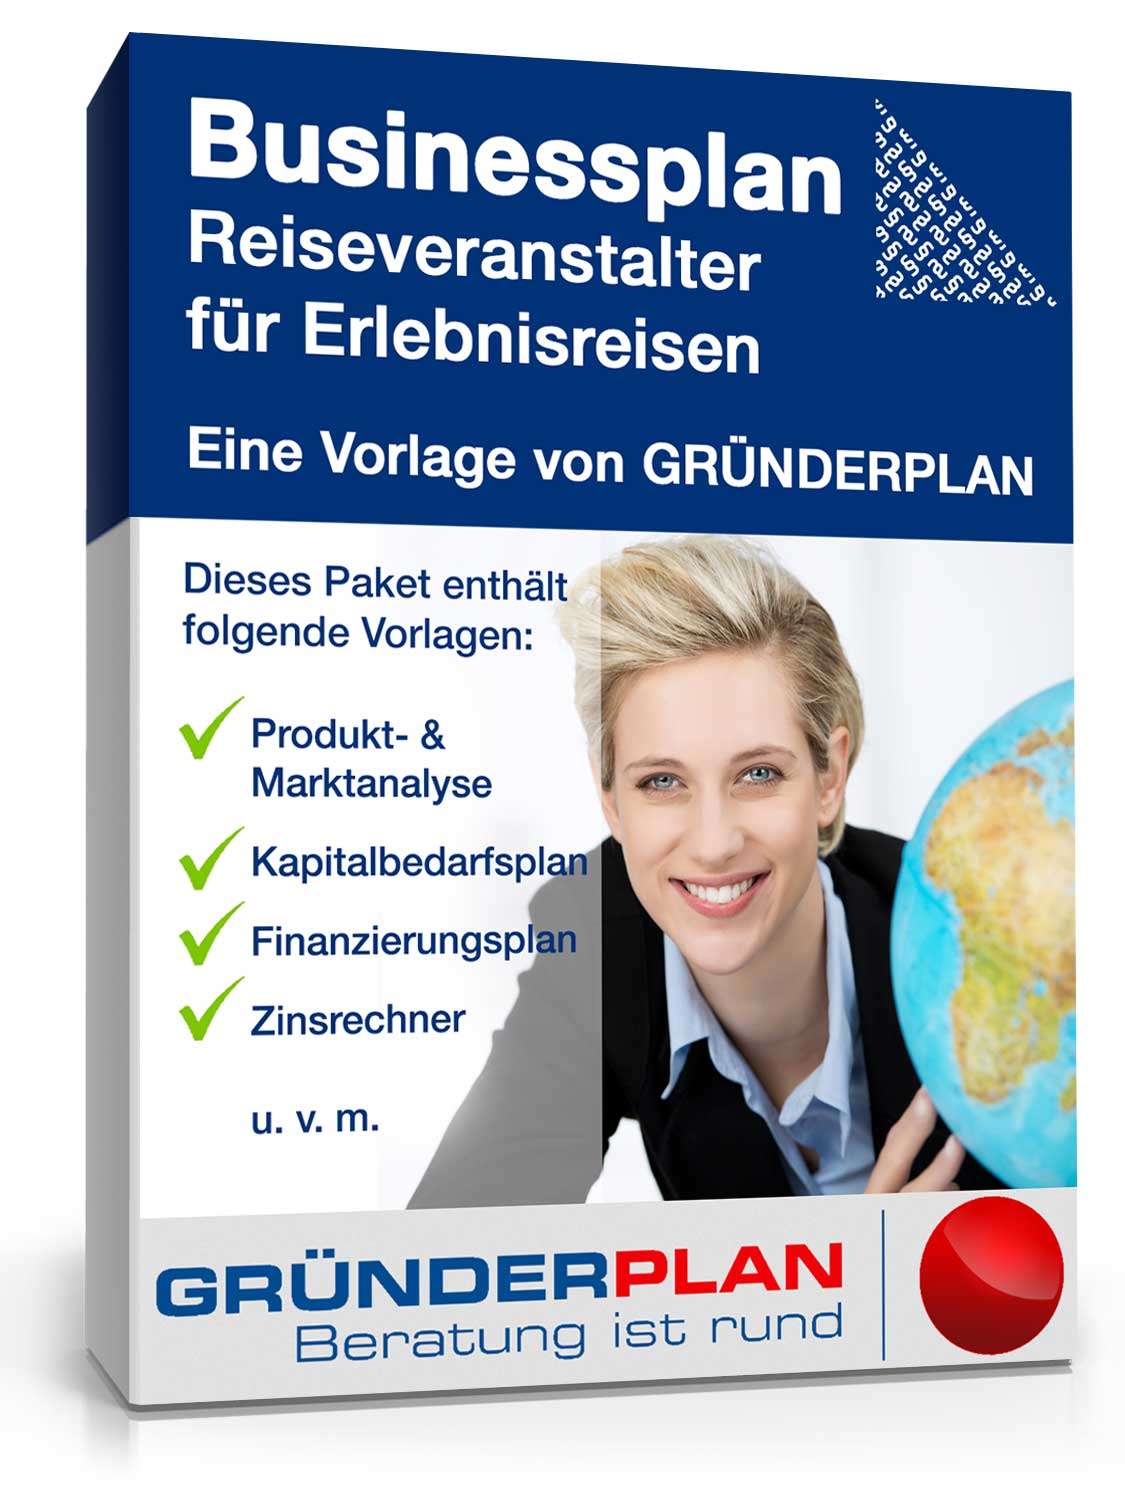 Hauptbild des Produkts: Businessplan Reiseveranstalter für Erlebnisreisen von Gründerplan